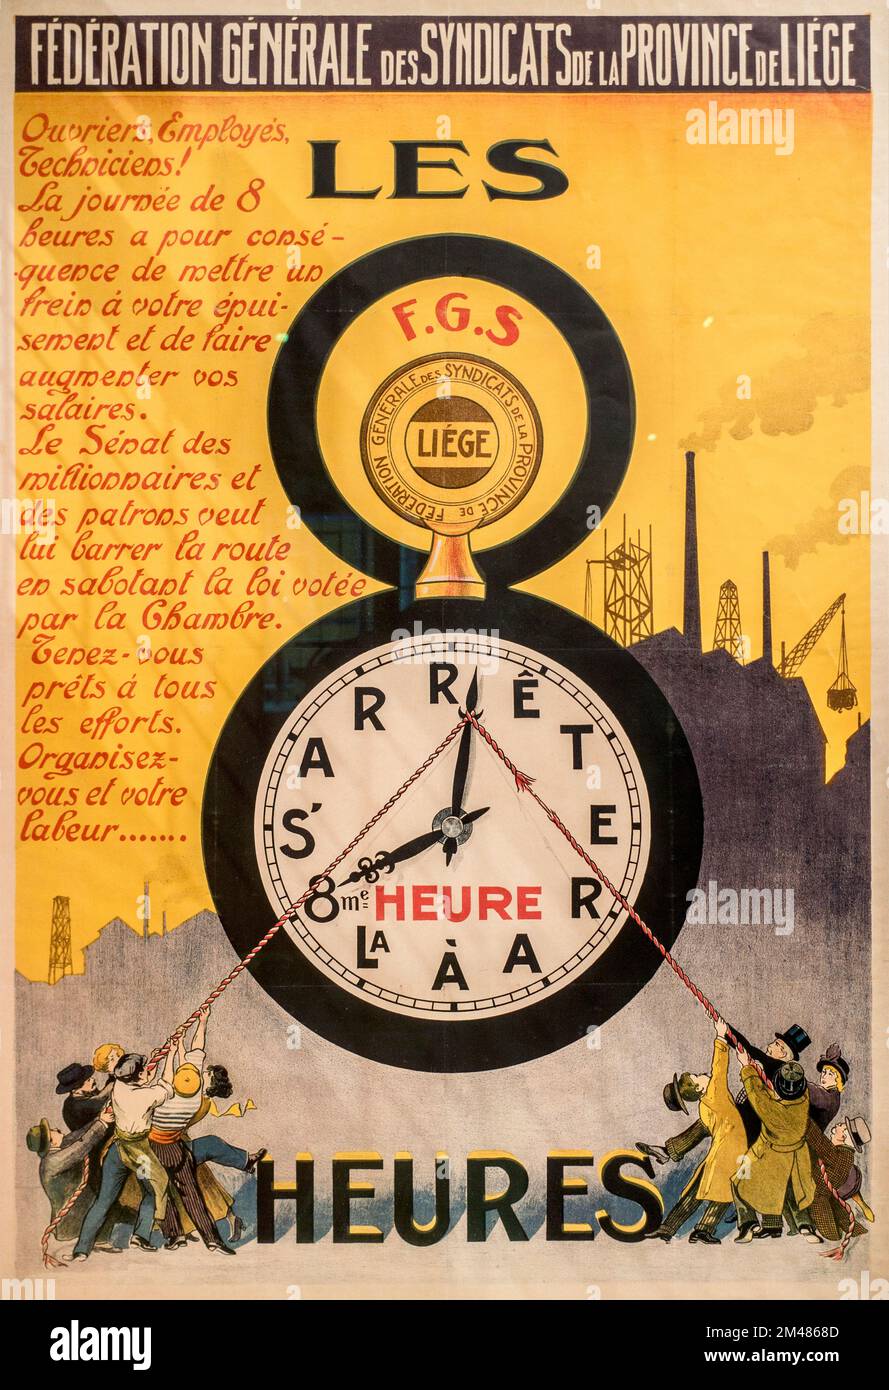 1920s affiche / écriteau de la campagne syndicale belge faisant la promotion de la journée de travail de huit heures / journée de travail de 8 heures / journée de travail Banque D'Images